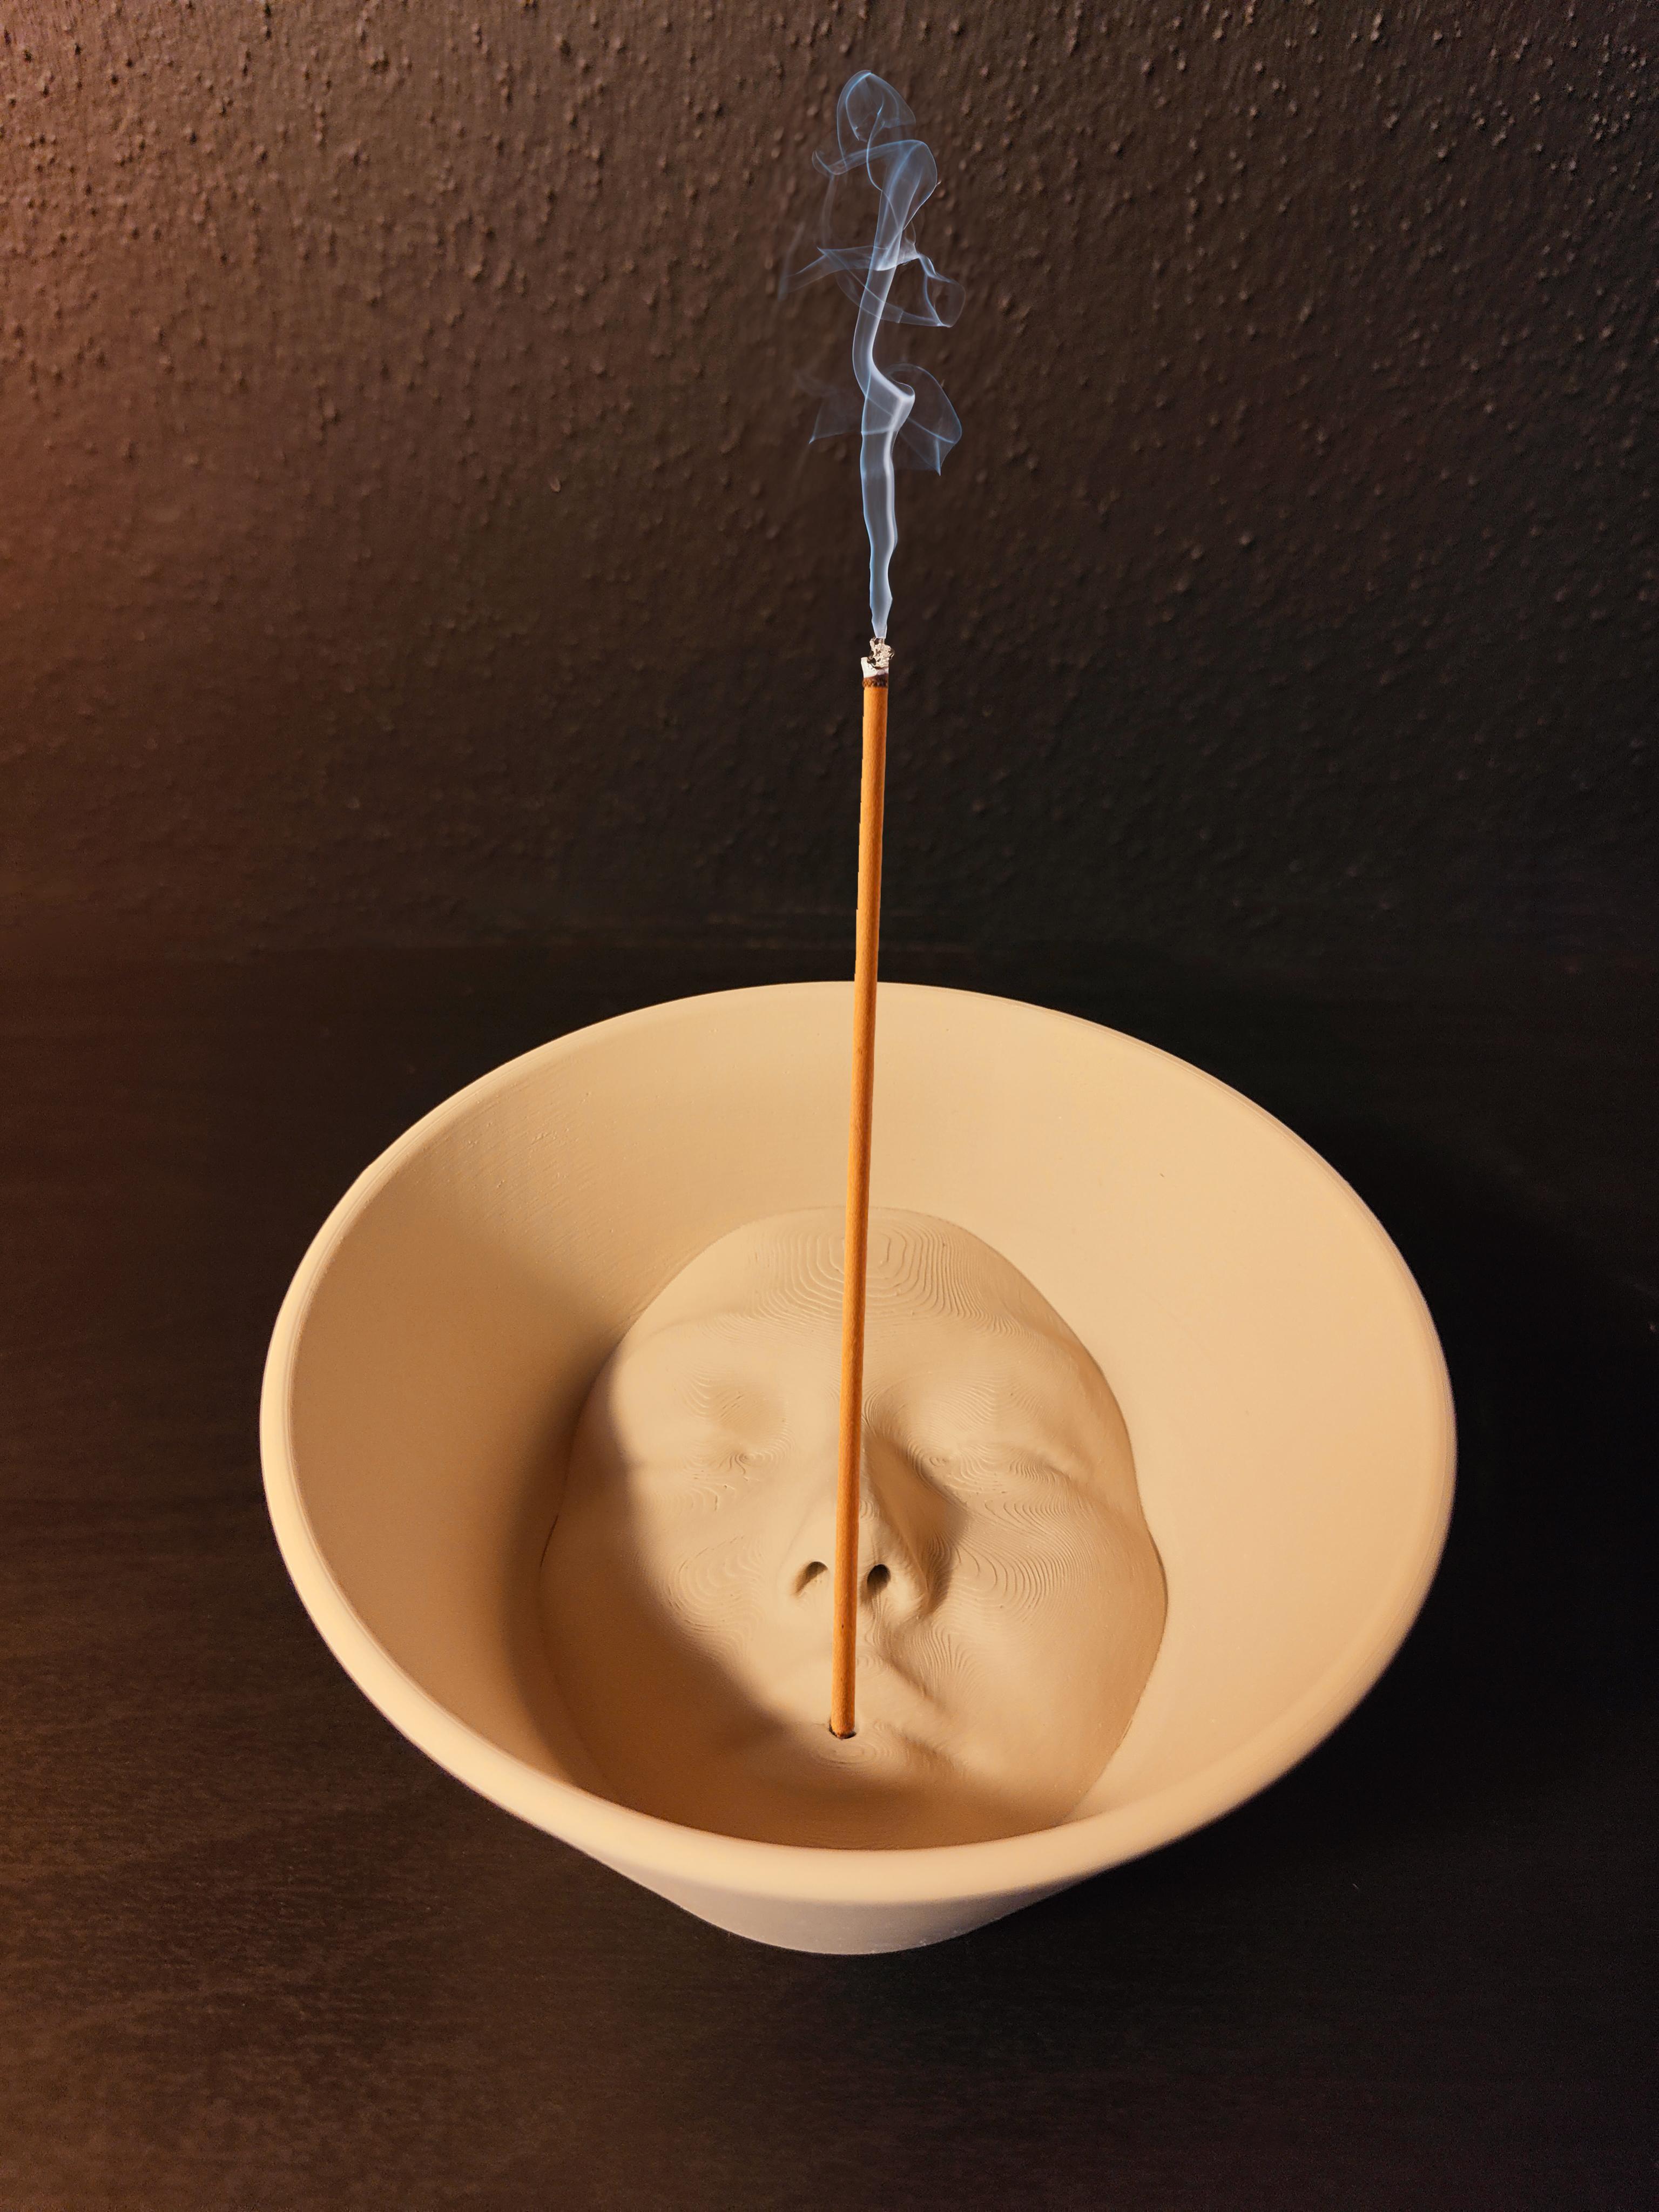 Serenity incense holder 3d model